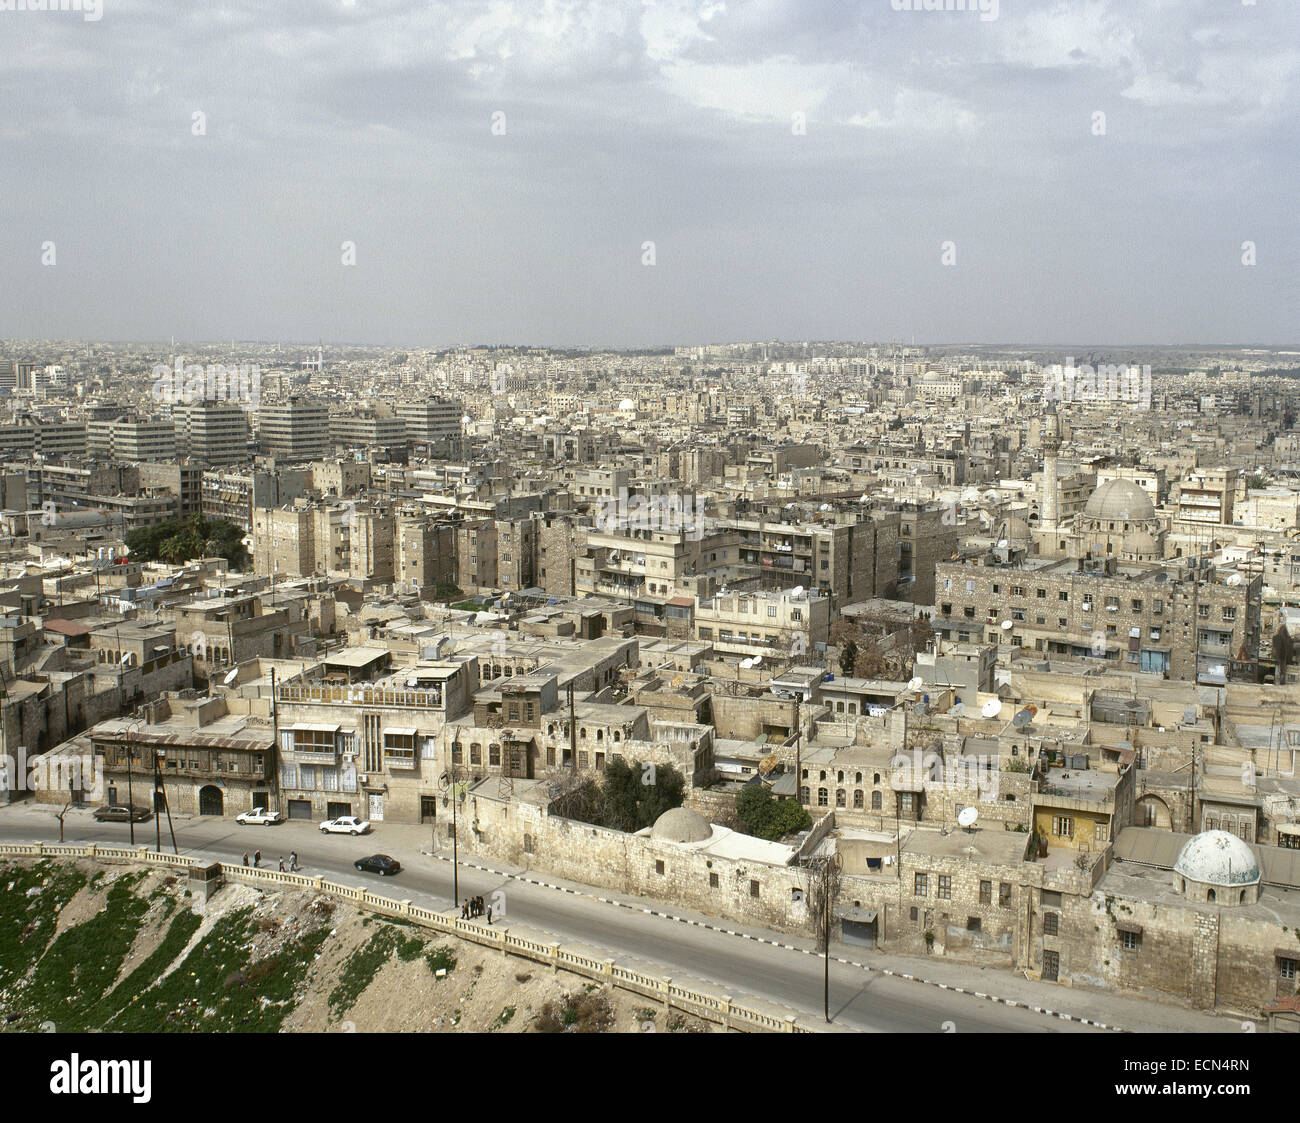 La Syrie. Alep. Vue d'ensemble. Proche Orient. Photo avant la guerre civile syrienne. Banque D'Images